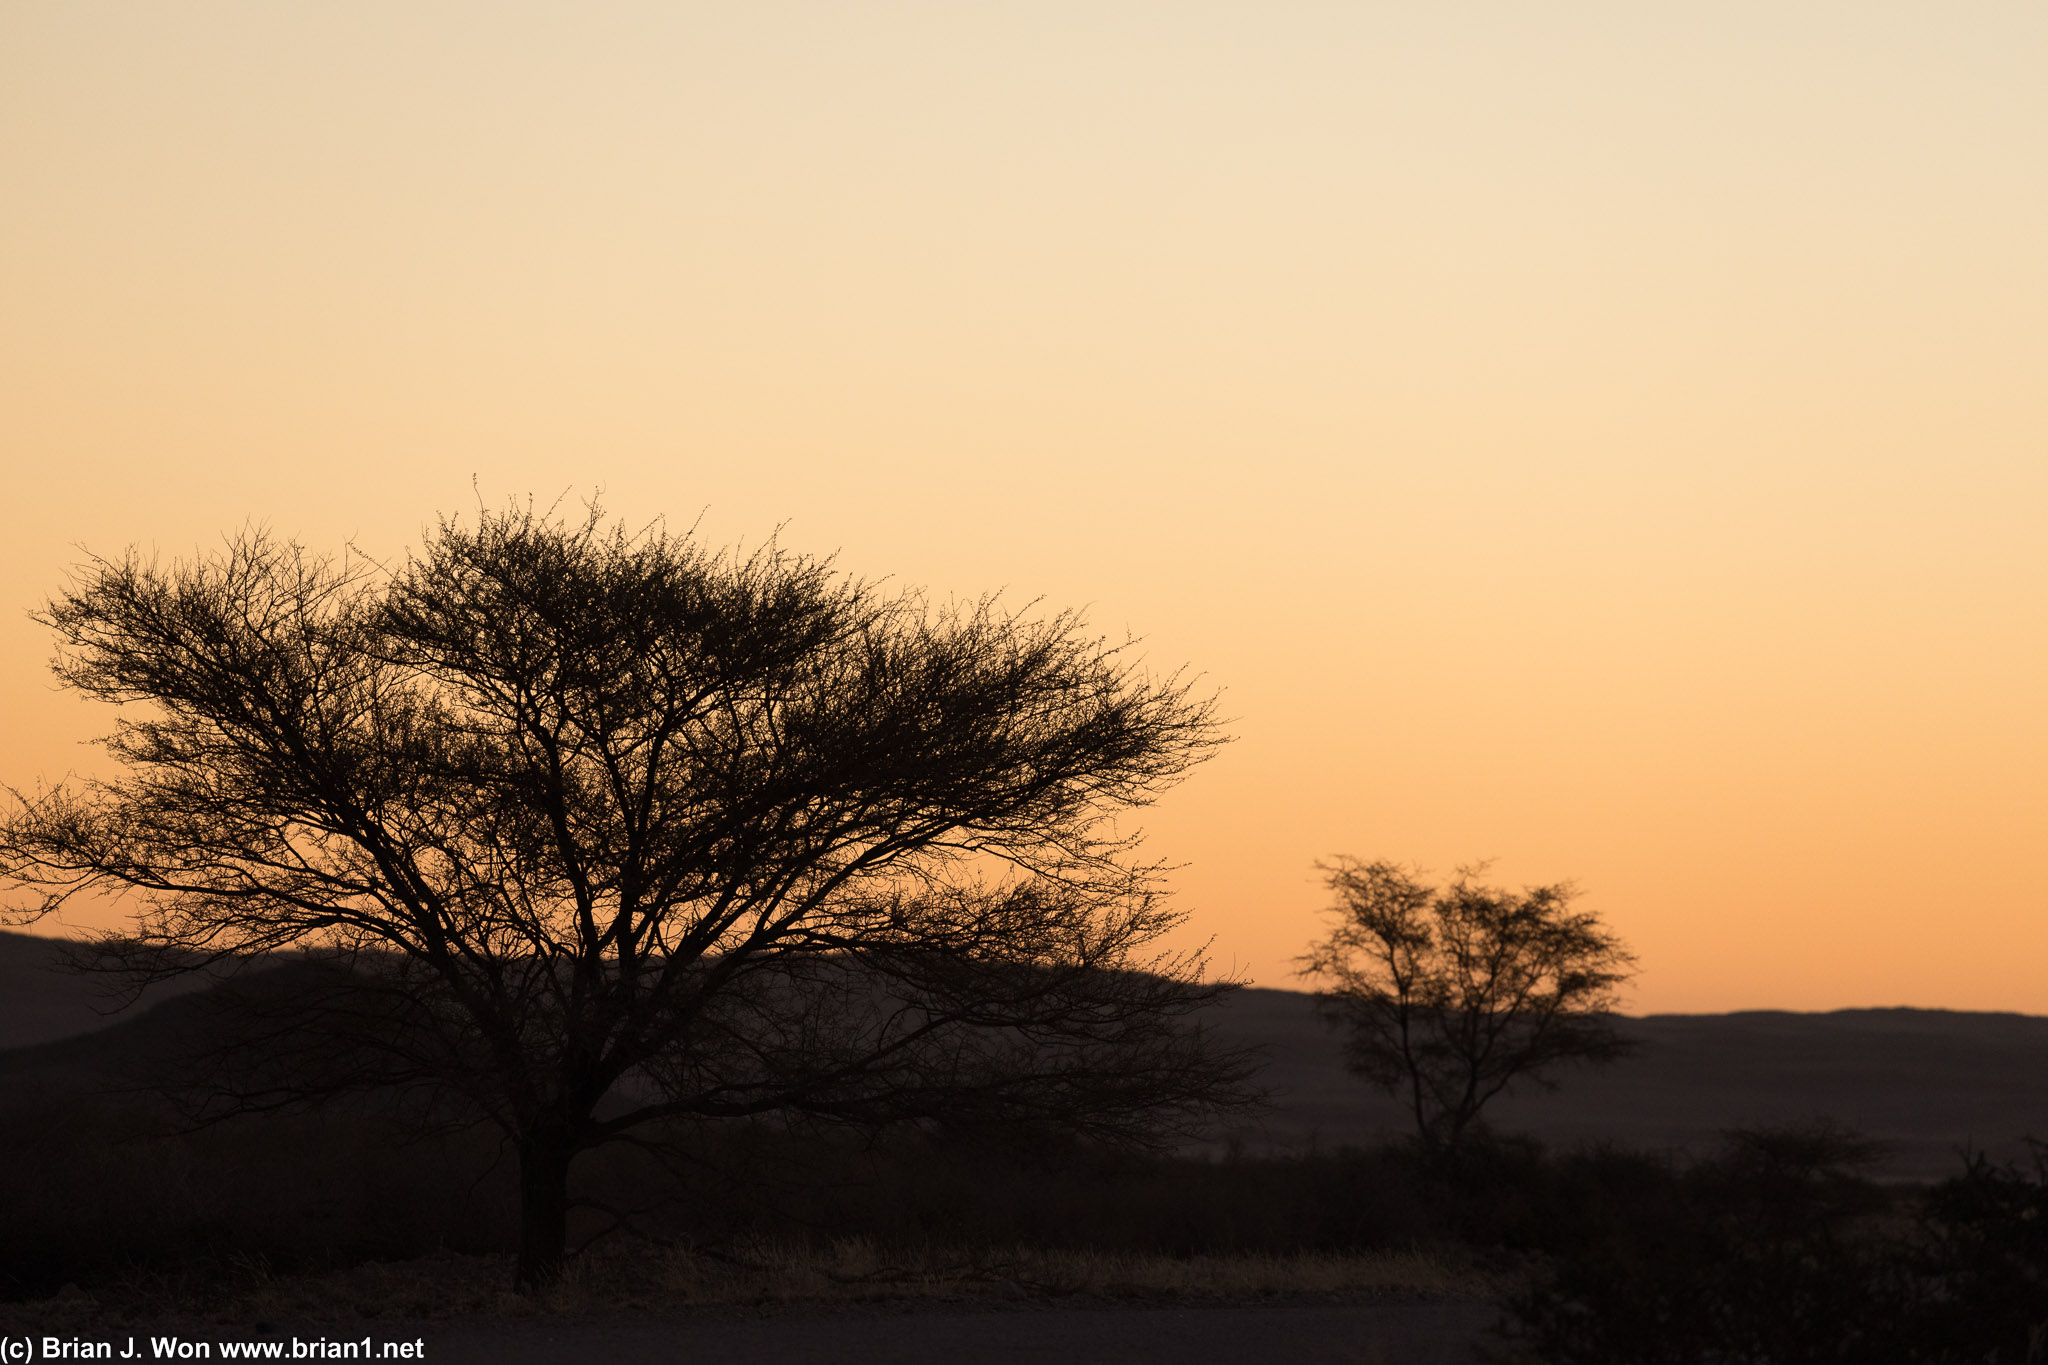 Sunset in the Namib desert.